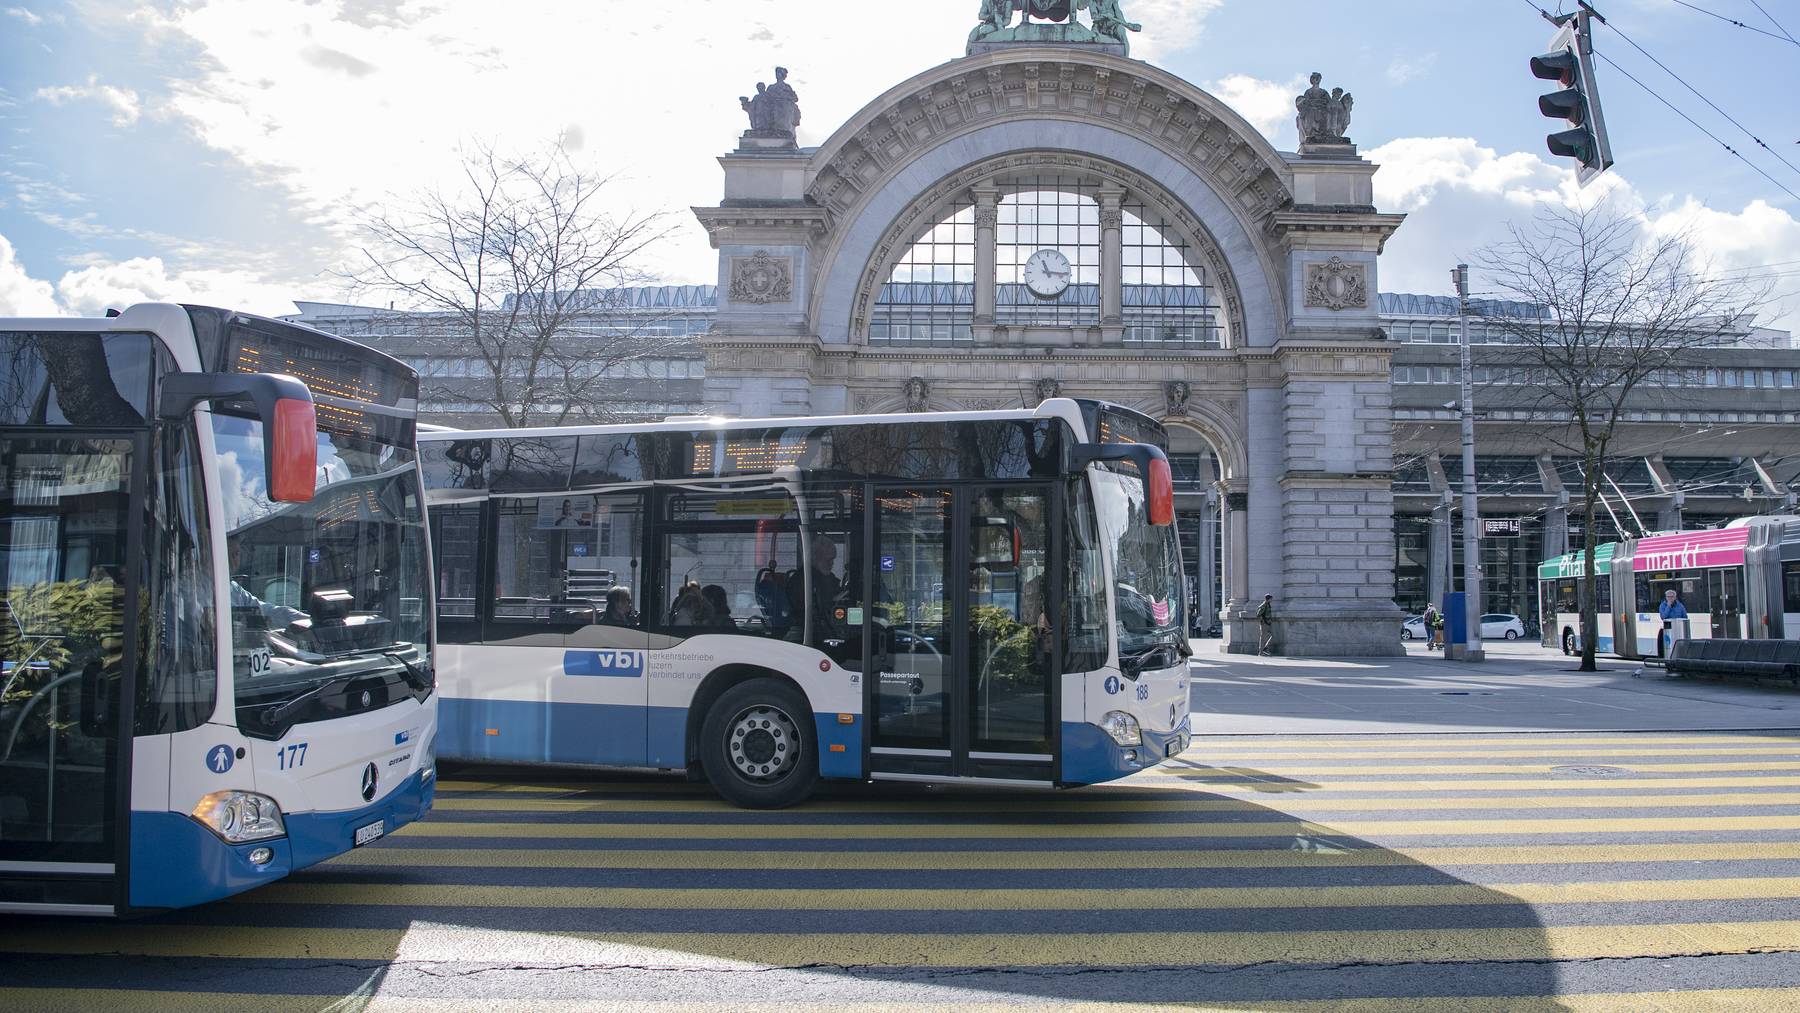 Busse der Verkehrsbetriebe Luzern AG oder VBL auf der Fahrt am Mittwoch, 4. Maerz 2020 beim Bahnhof in Luzern.